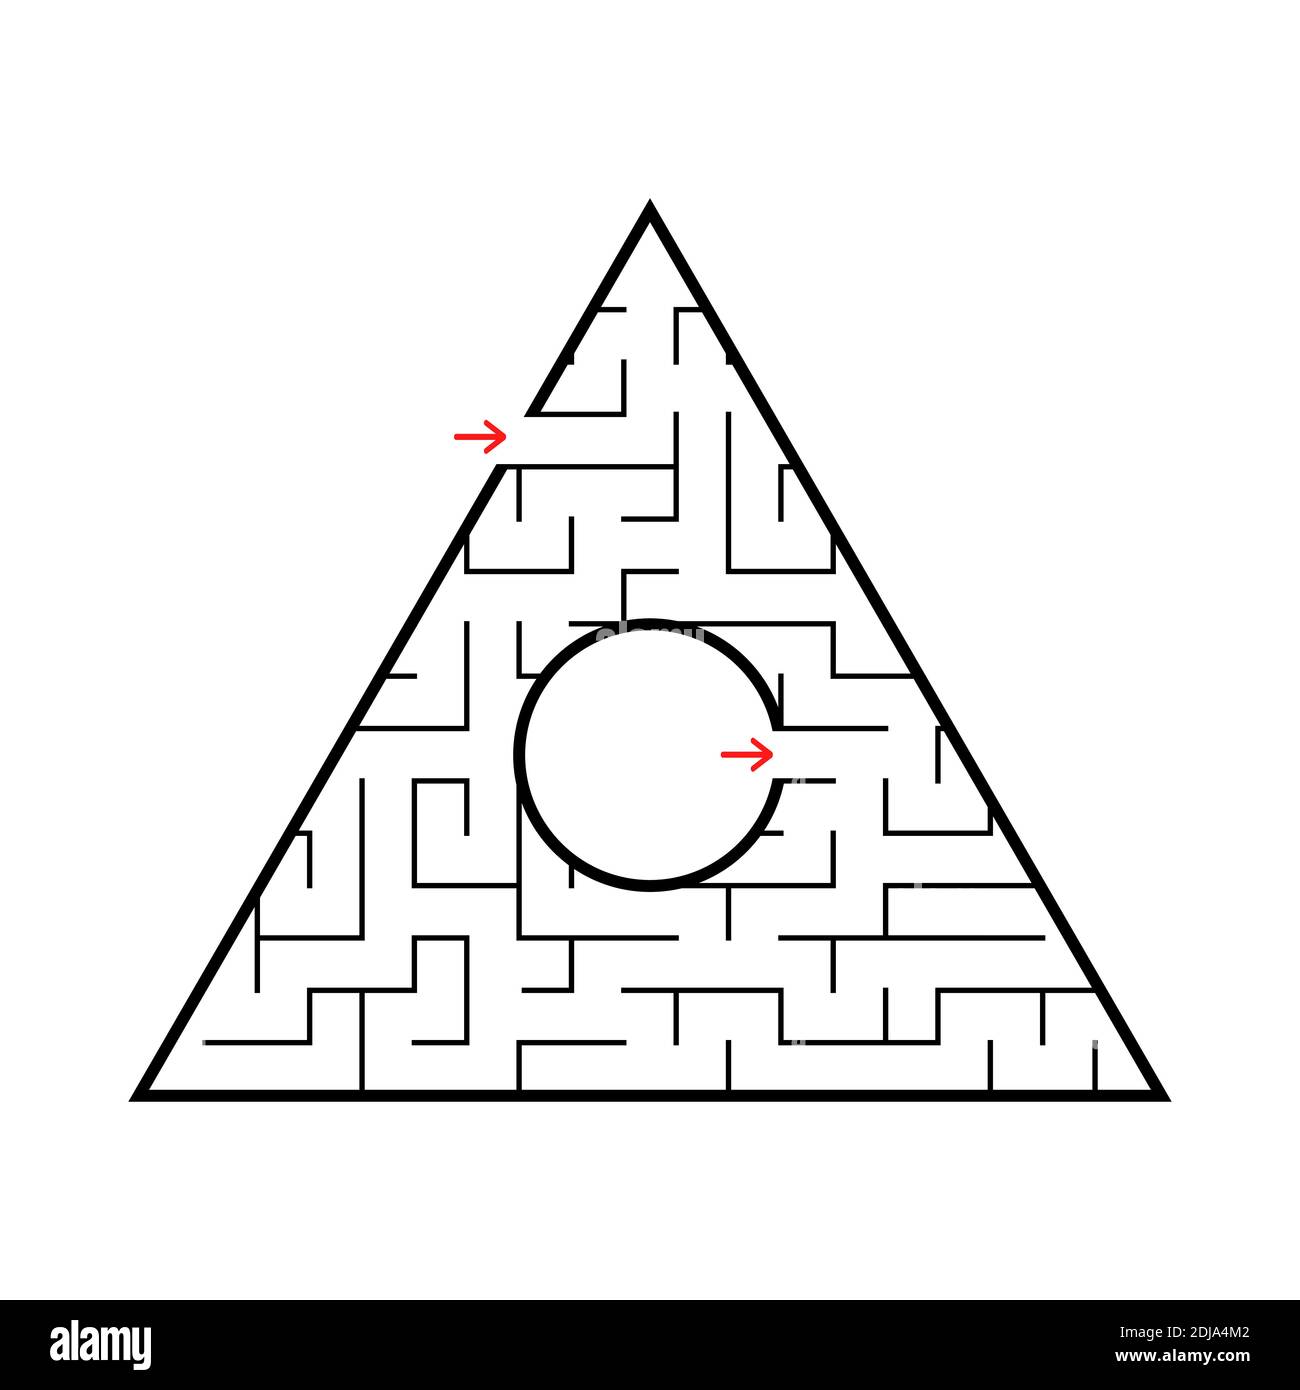 Labirinto triangolare con un ingresso e un'uscita. Semplice illustrazione vettoriale piatta isolata su sfondo bianco. Con un posto per la vostra immagine. Illustrazione Vettoriale